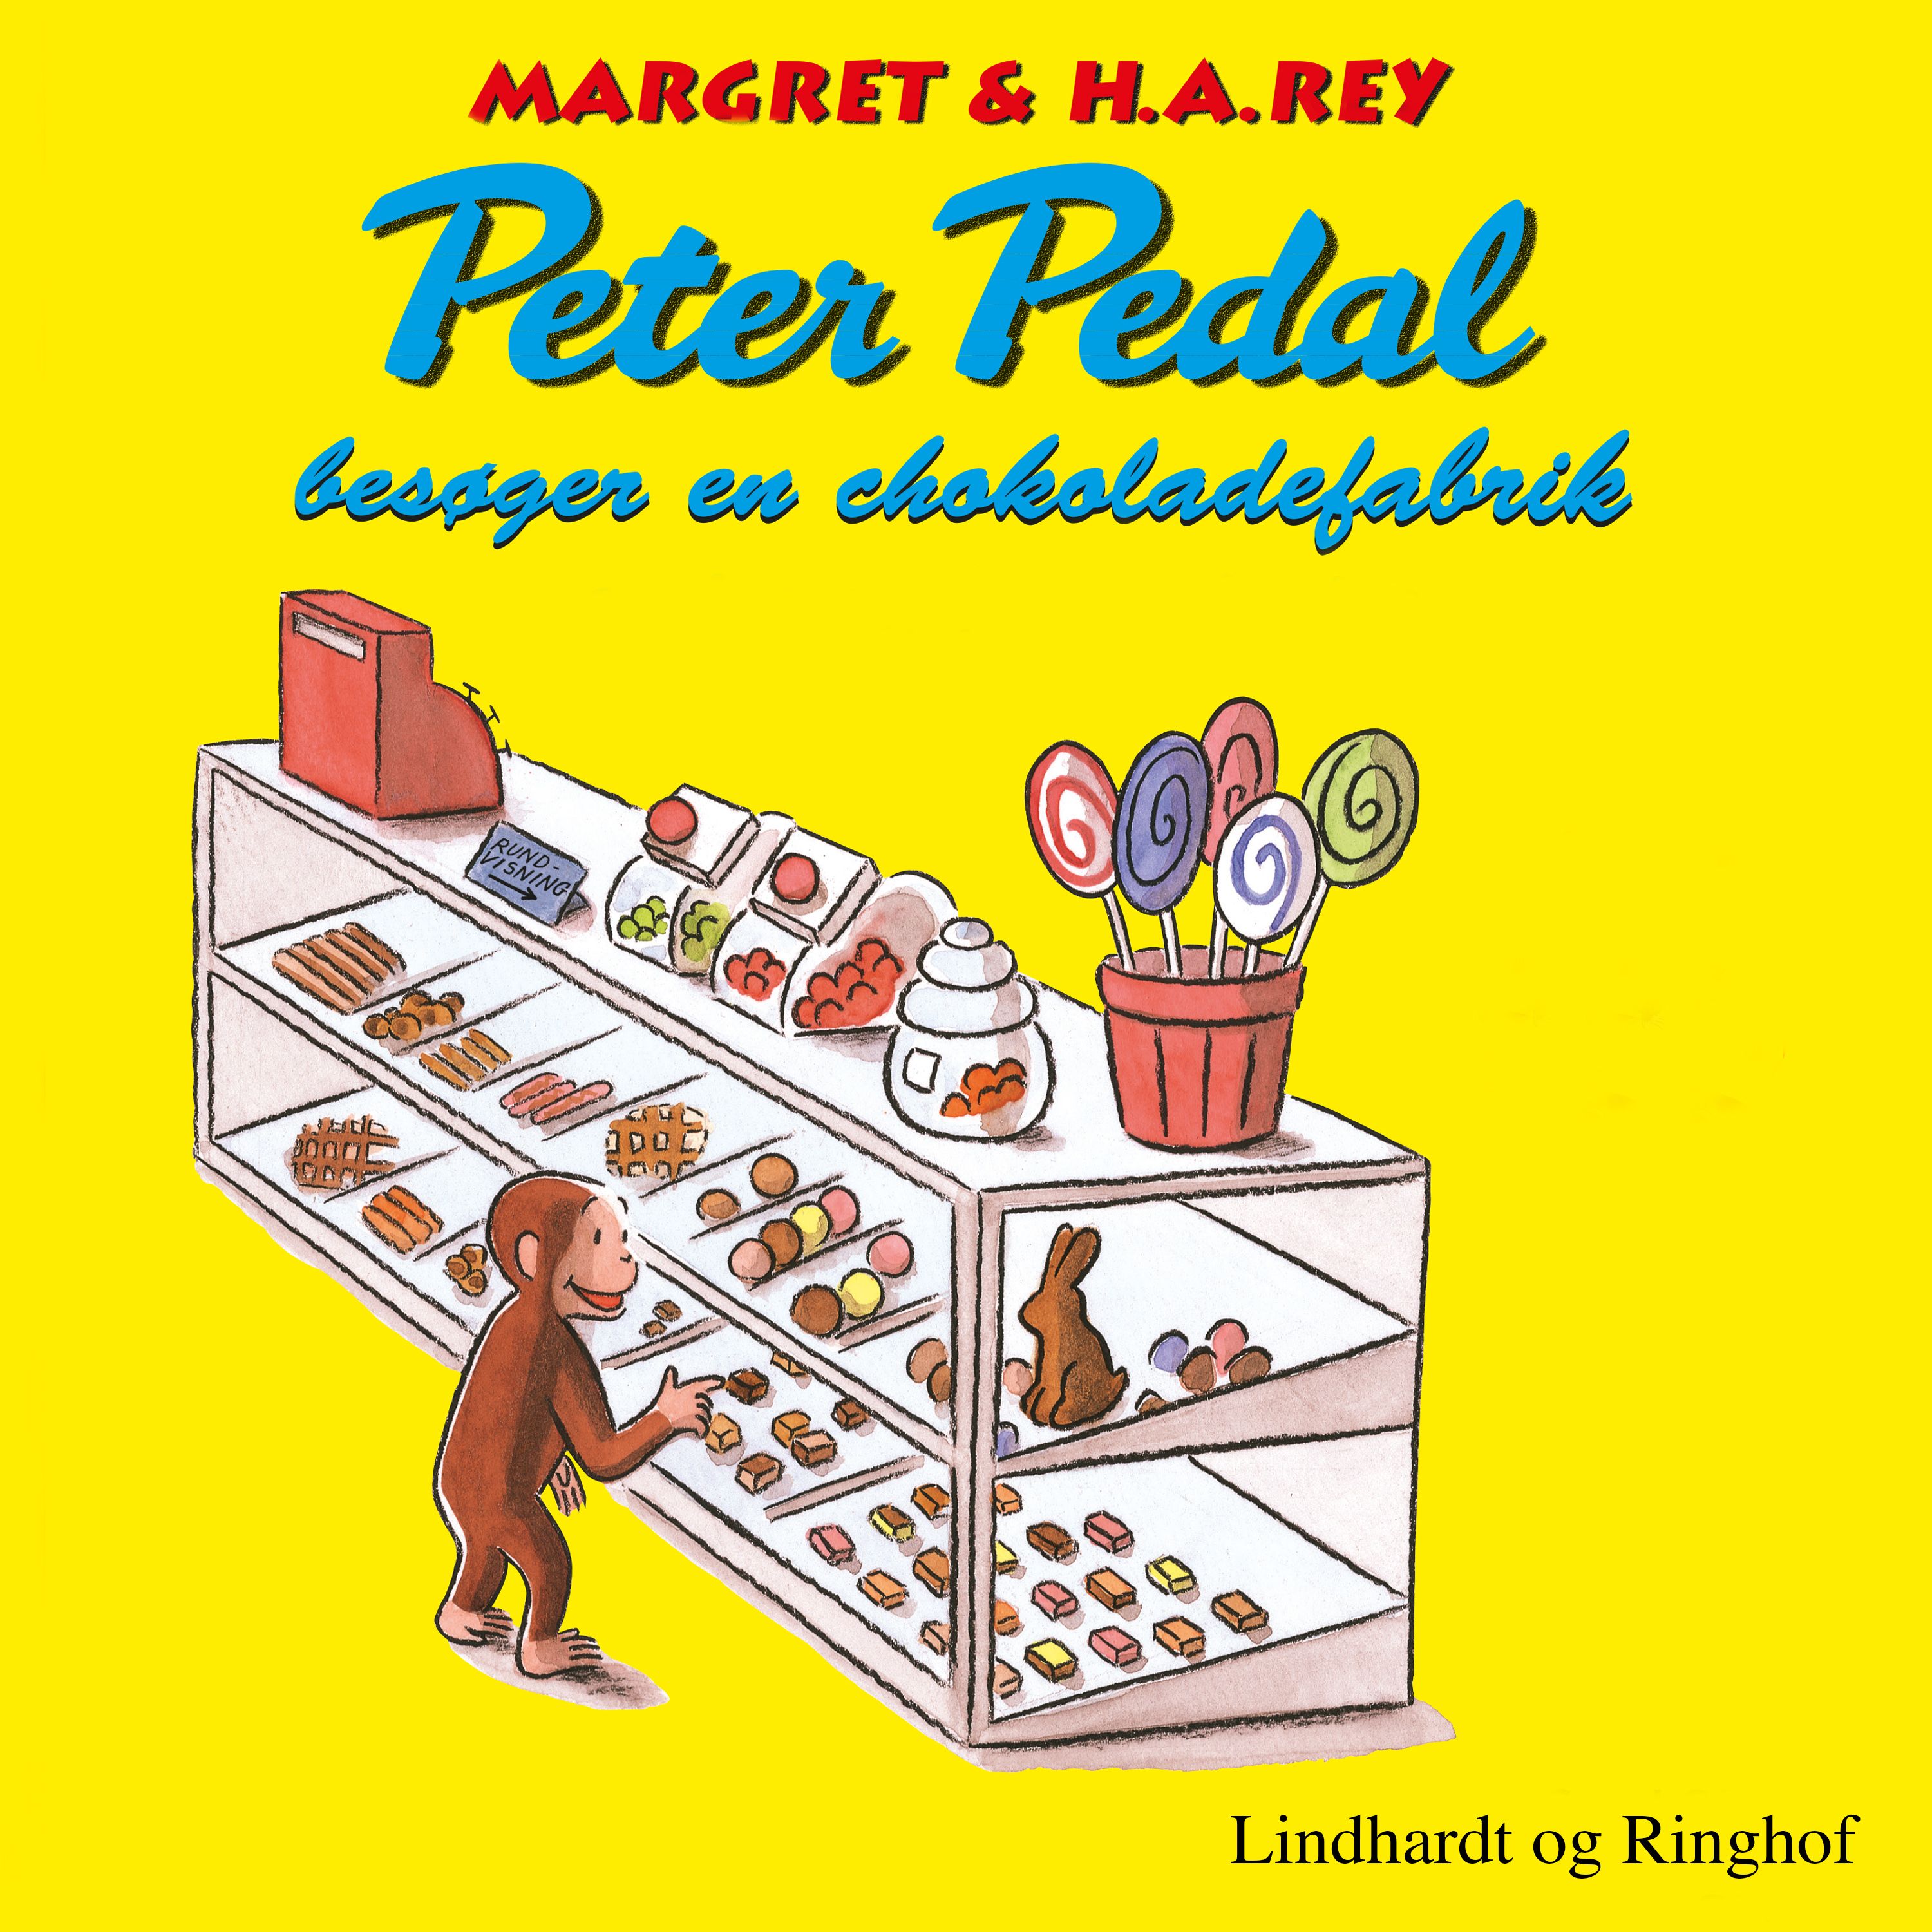 Peter Pedal besøger en chokoladefabrik, lydbog af H.a. Rey